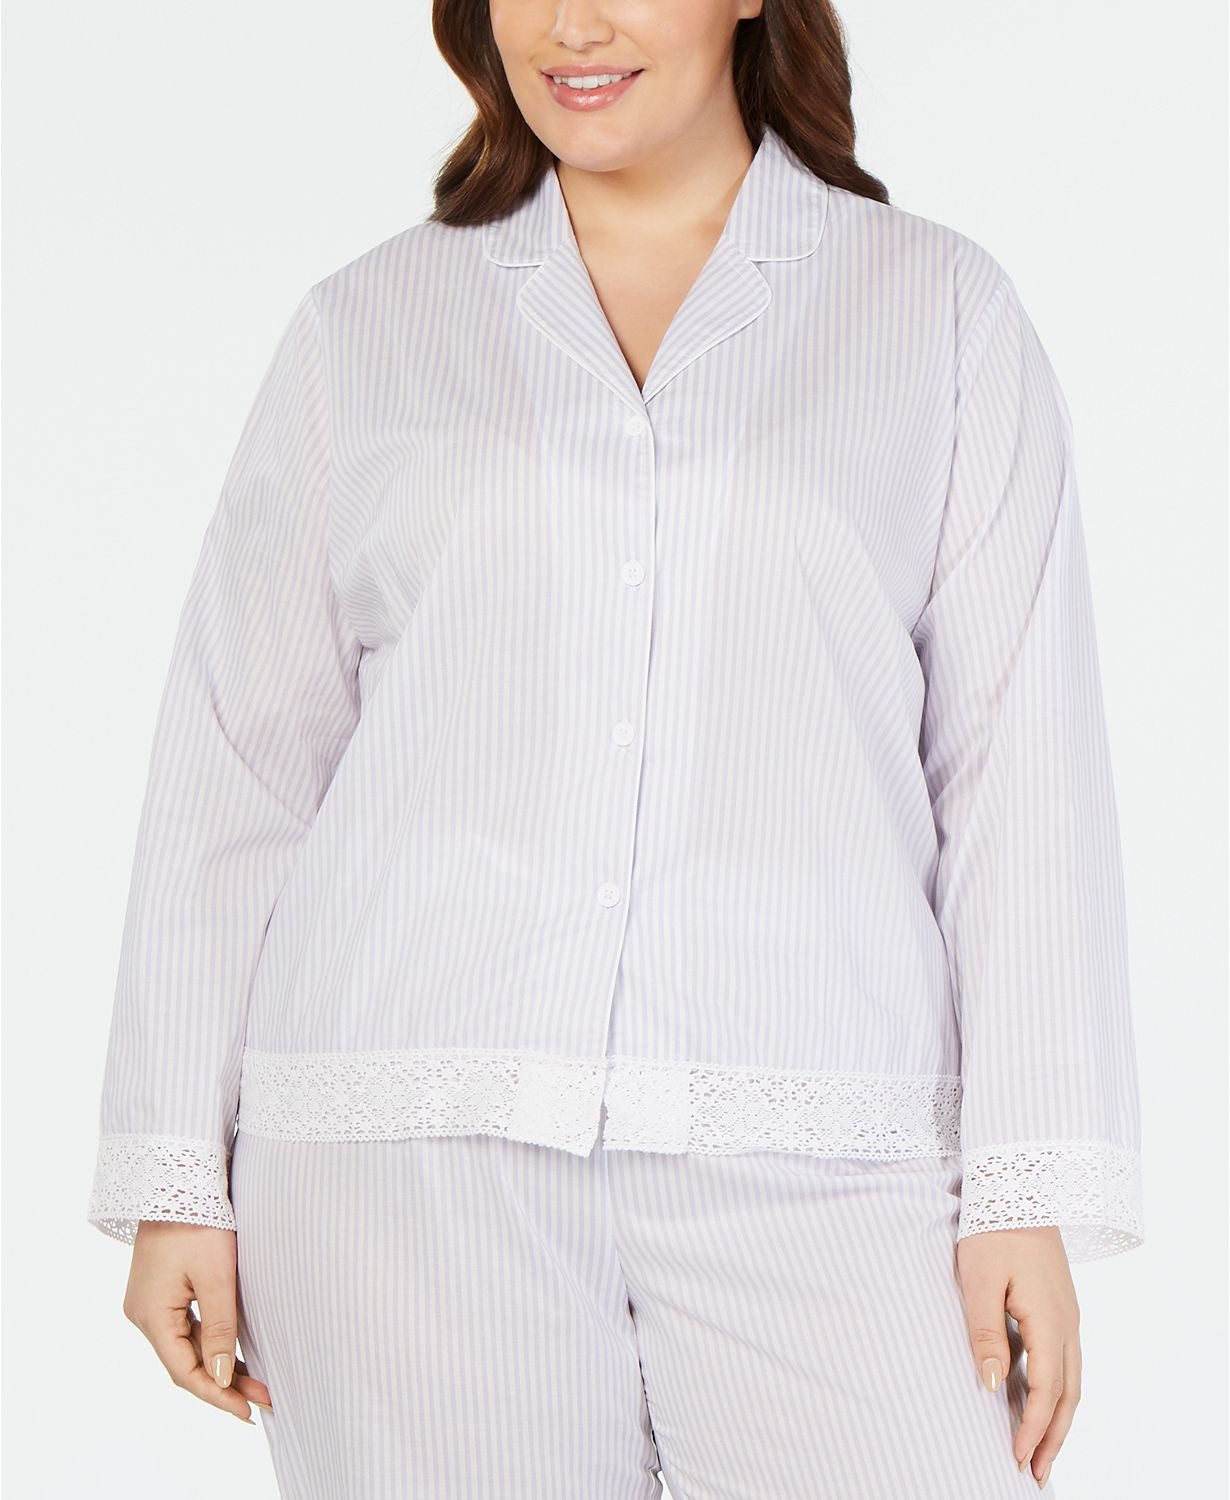 Charter Club PLUS Lace Trim Notch Collar Pajama Top in Block Stripe Lavender